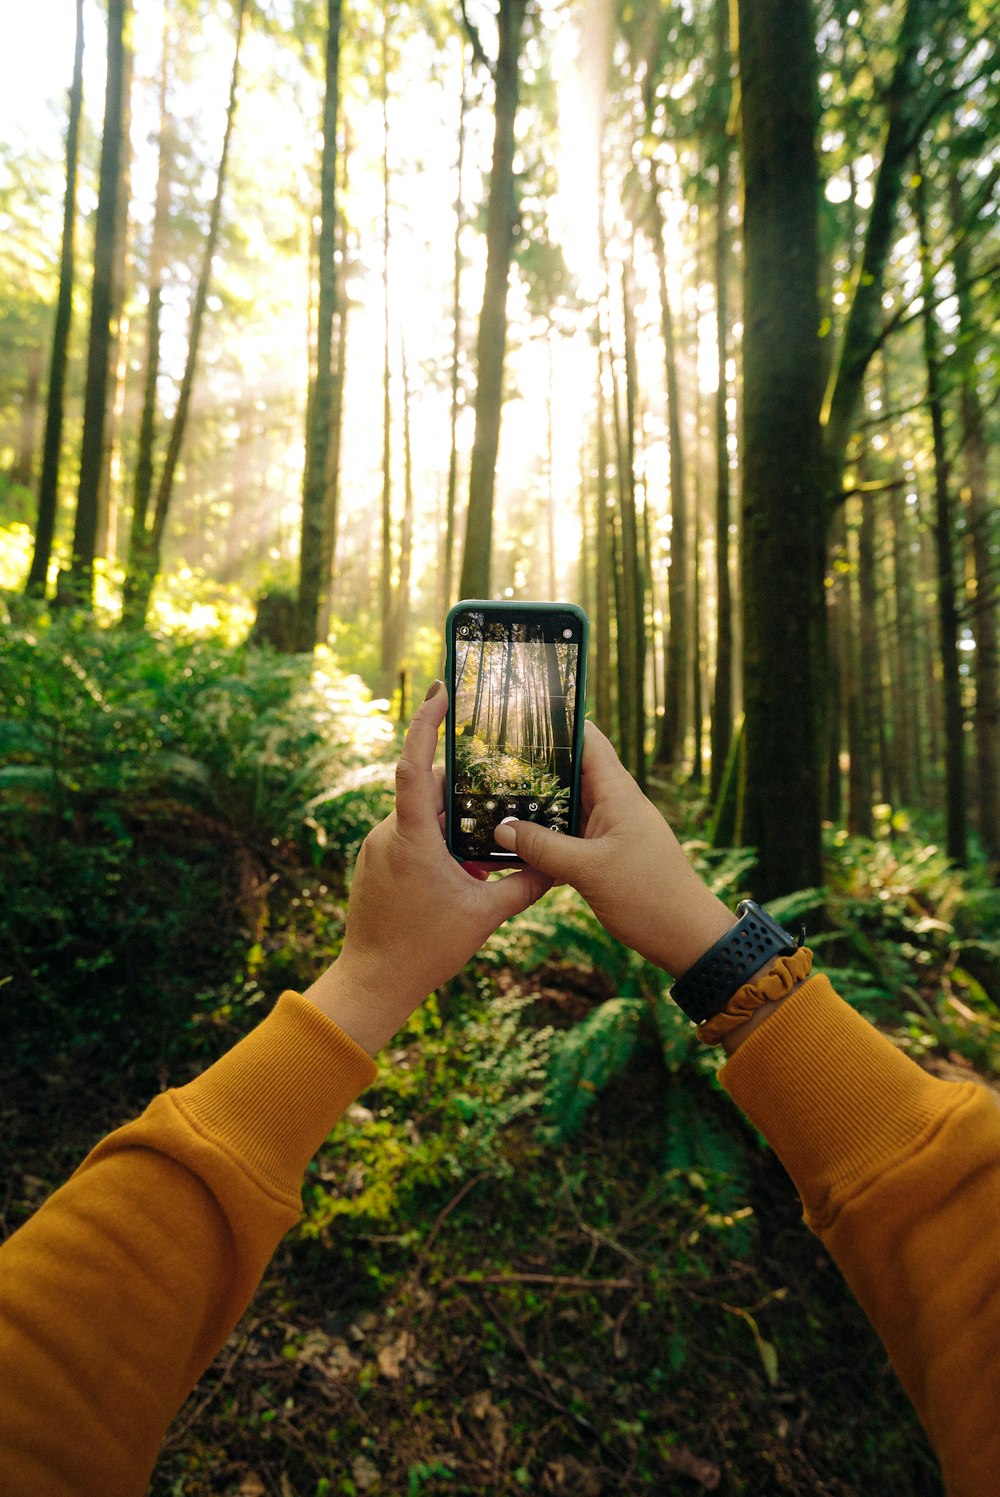 persona con smartphone negro tomando fotos de árboles verdes durante el día